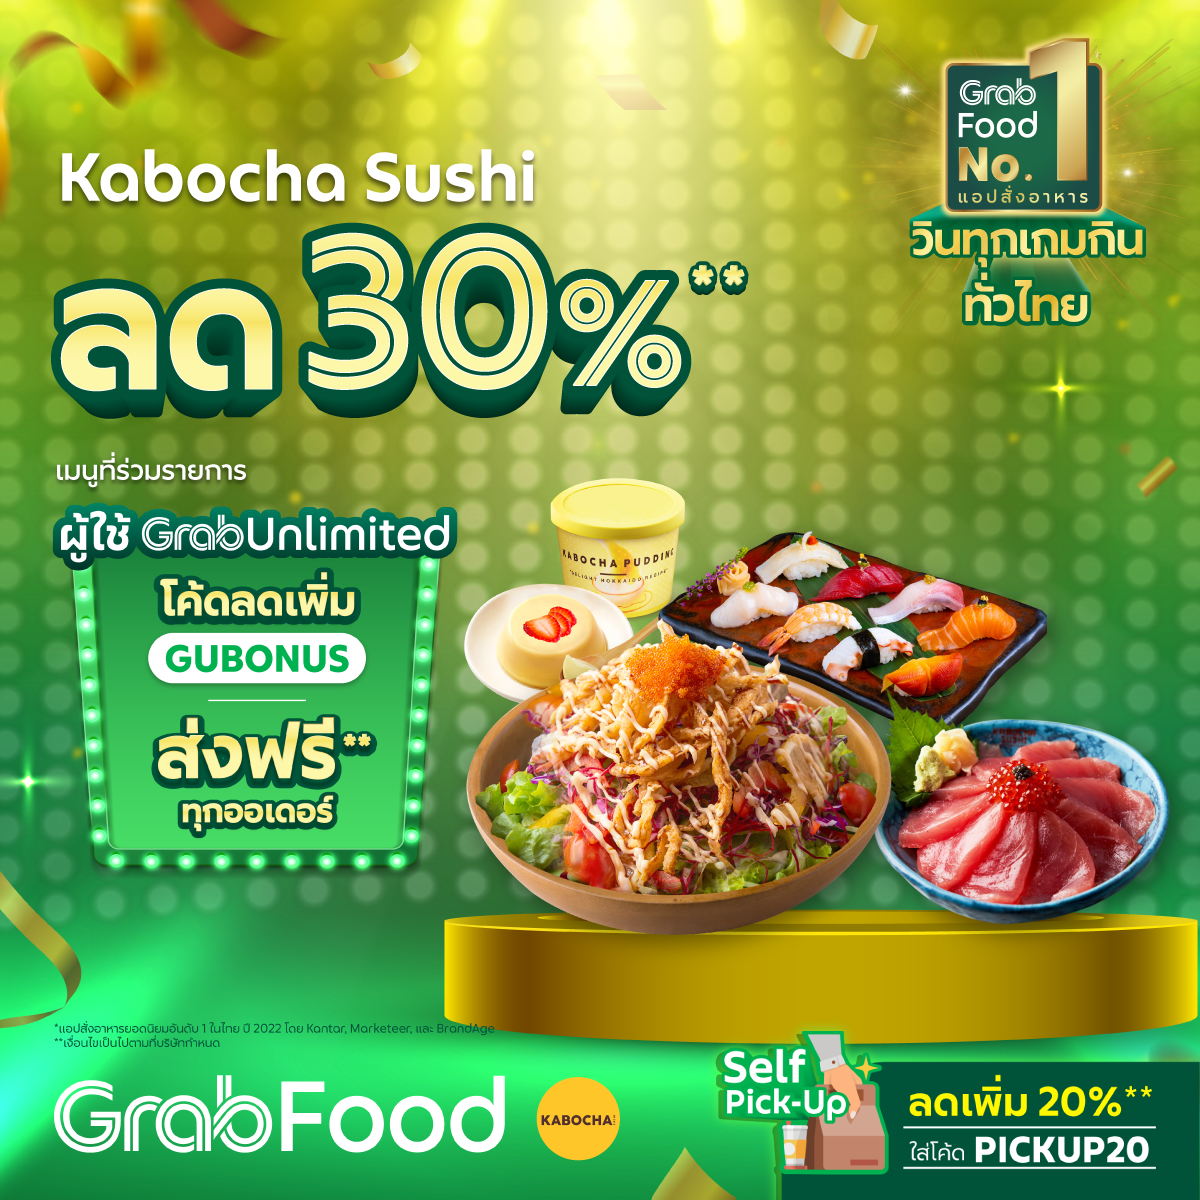 โปรโมชั่น GrabFood : ดีลเด็ดเอาใจสายอาหารญี่ปุ่น Kabocha Sushi ลดสูงสุด 30%  ใส่รหัส GUBONUS ลดเพิ่ม 40 บาท